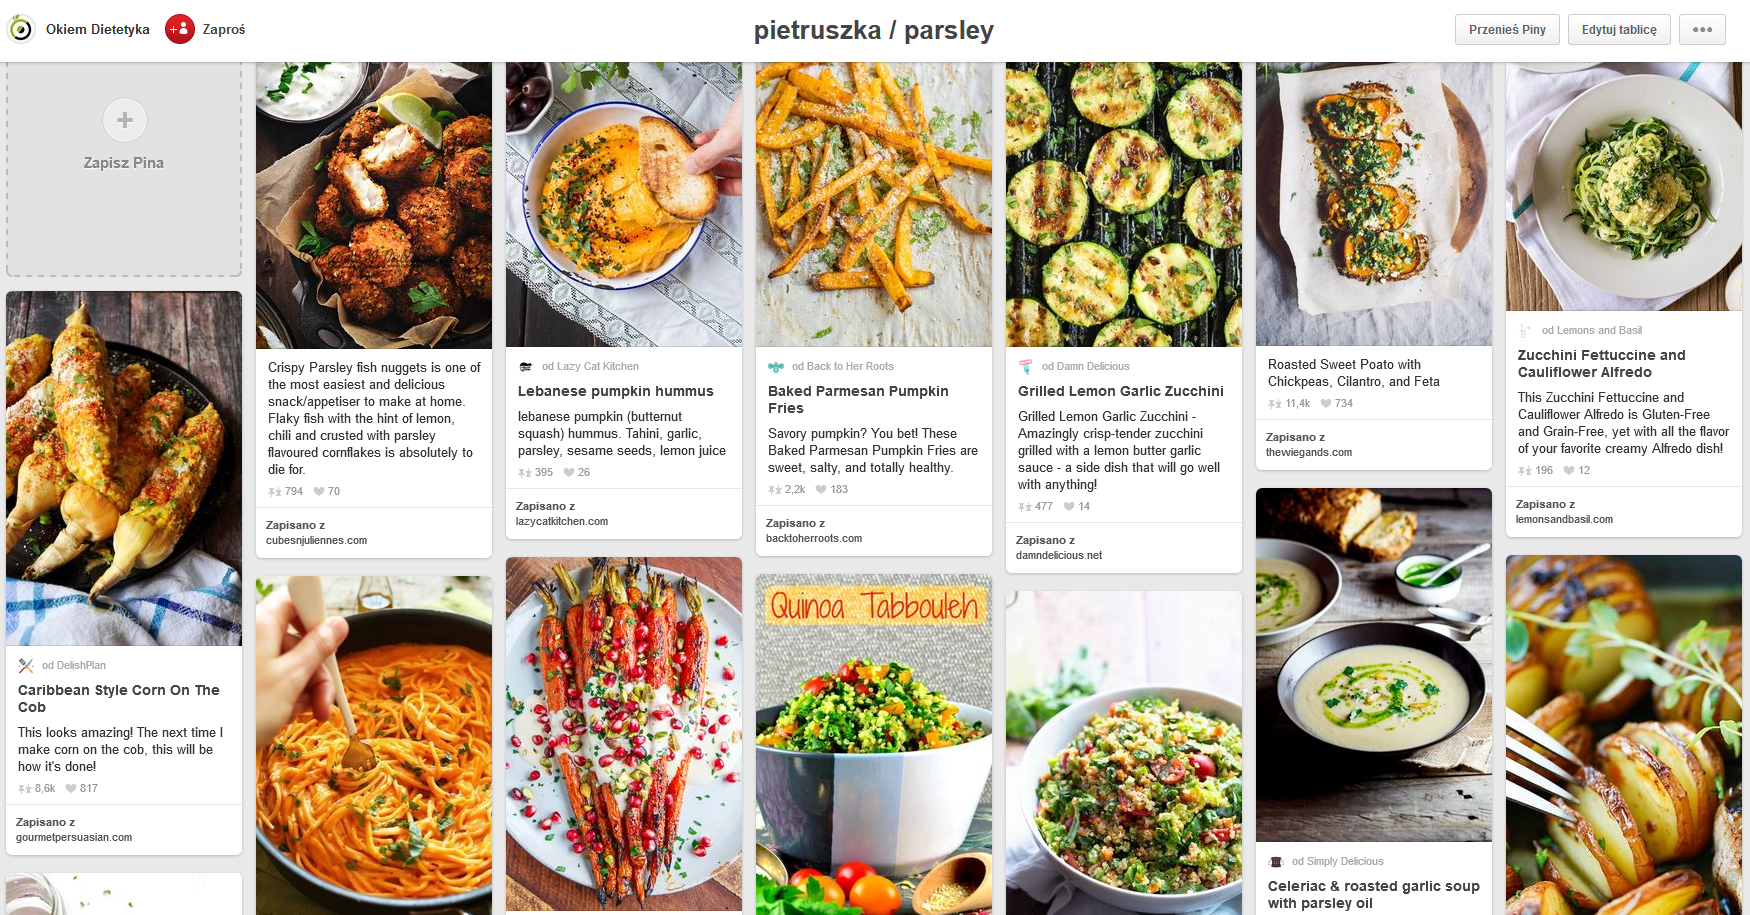 pinterest – tablica inspiracji kulinarnych z daniami i napojami z pietruszką